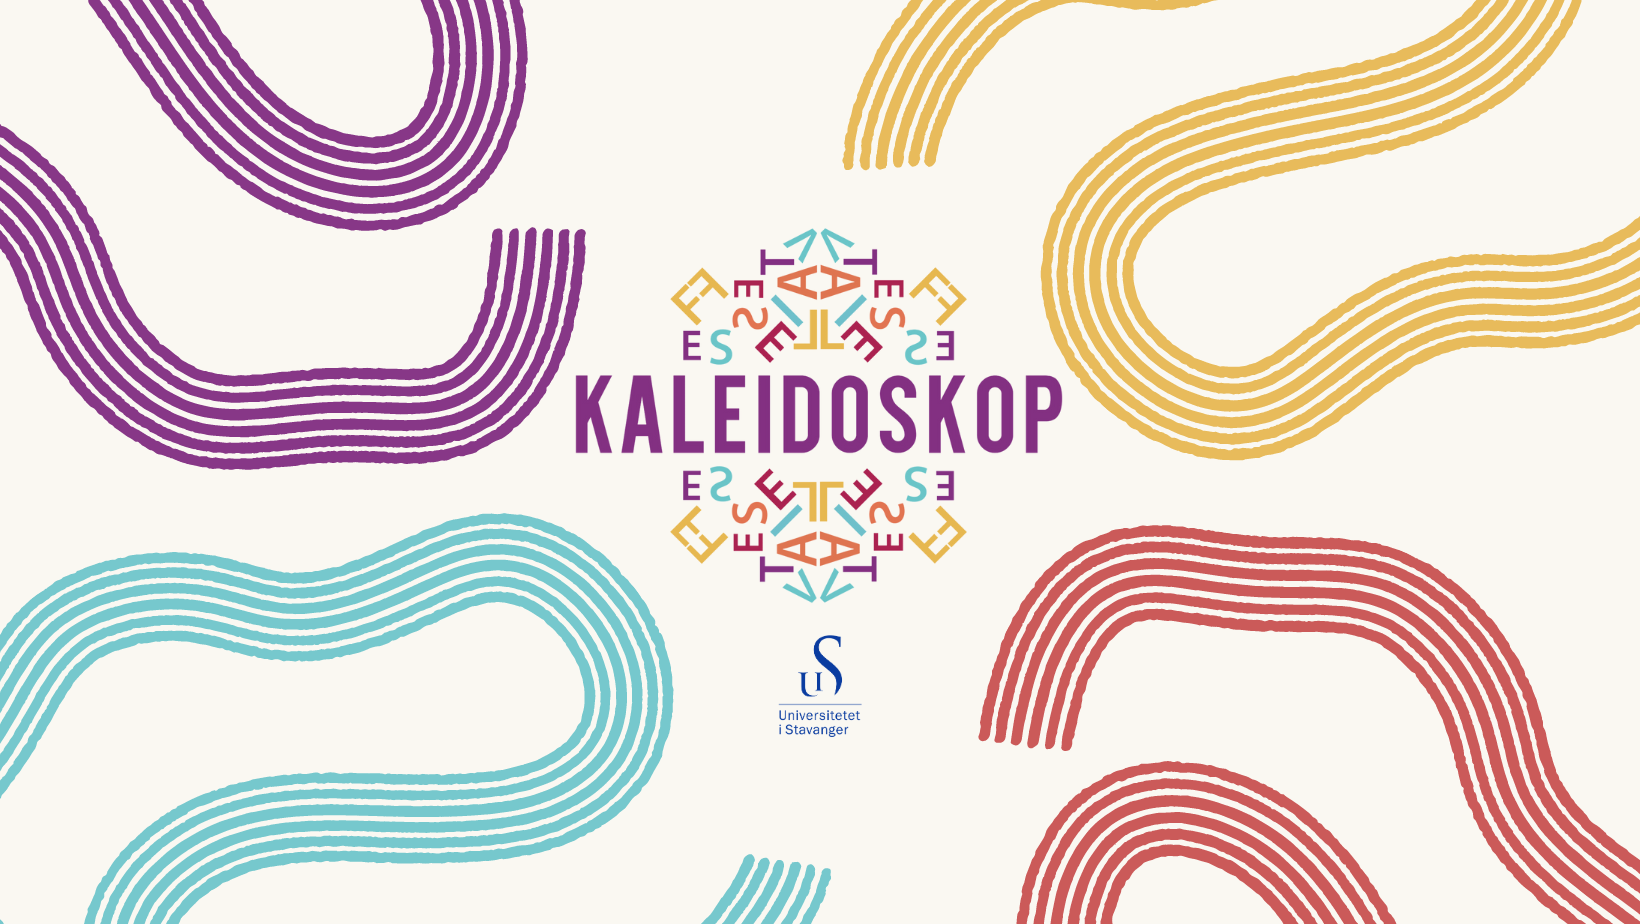 Kaleidoskop grafikk med logo